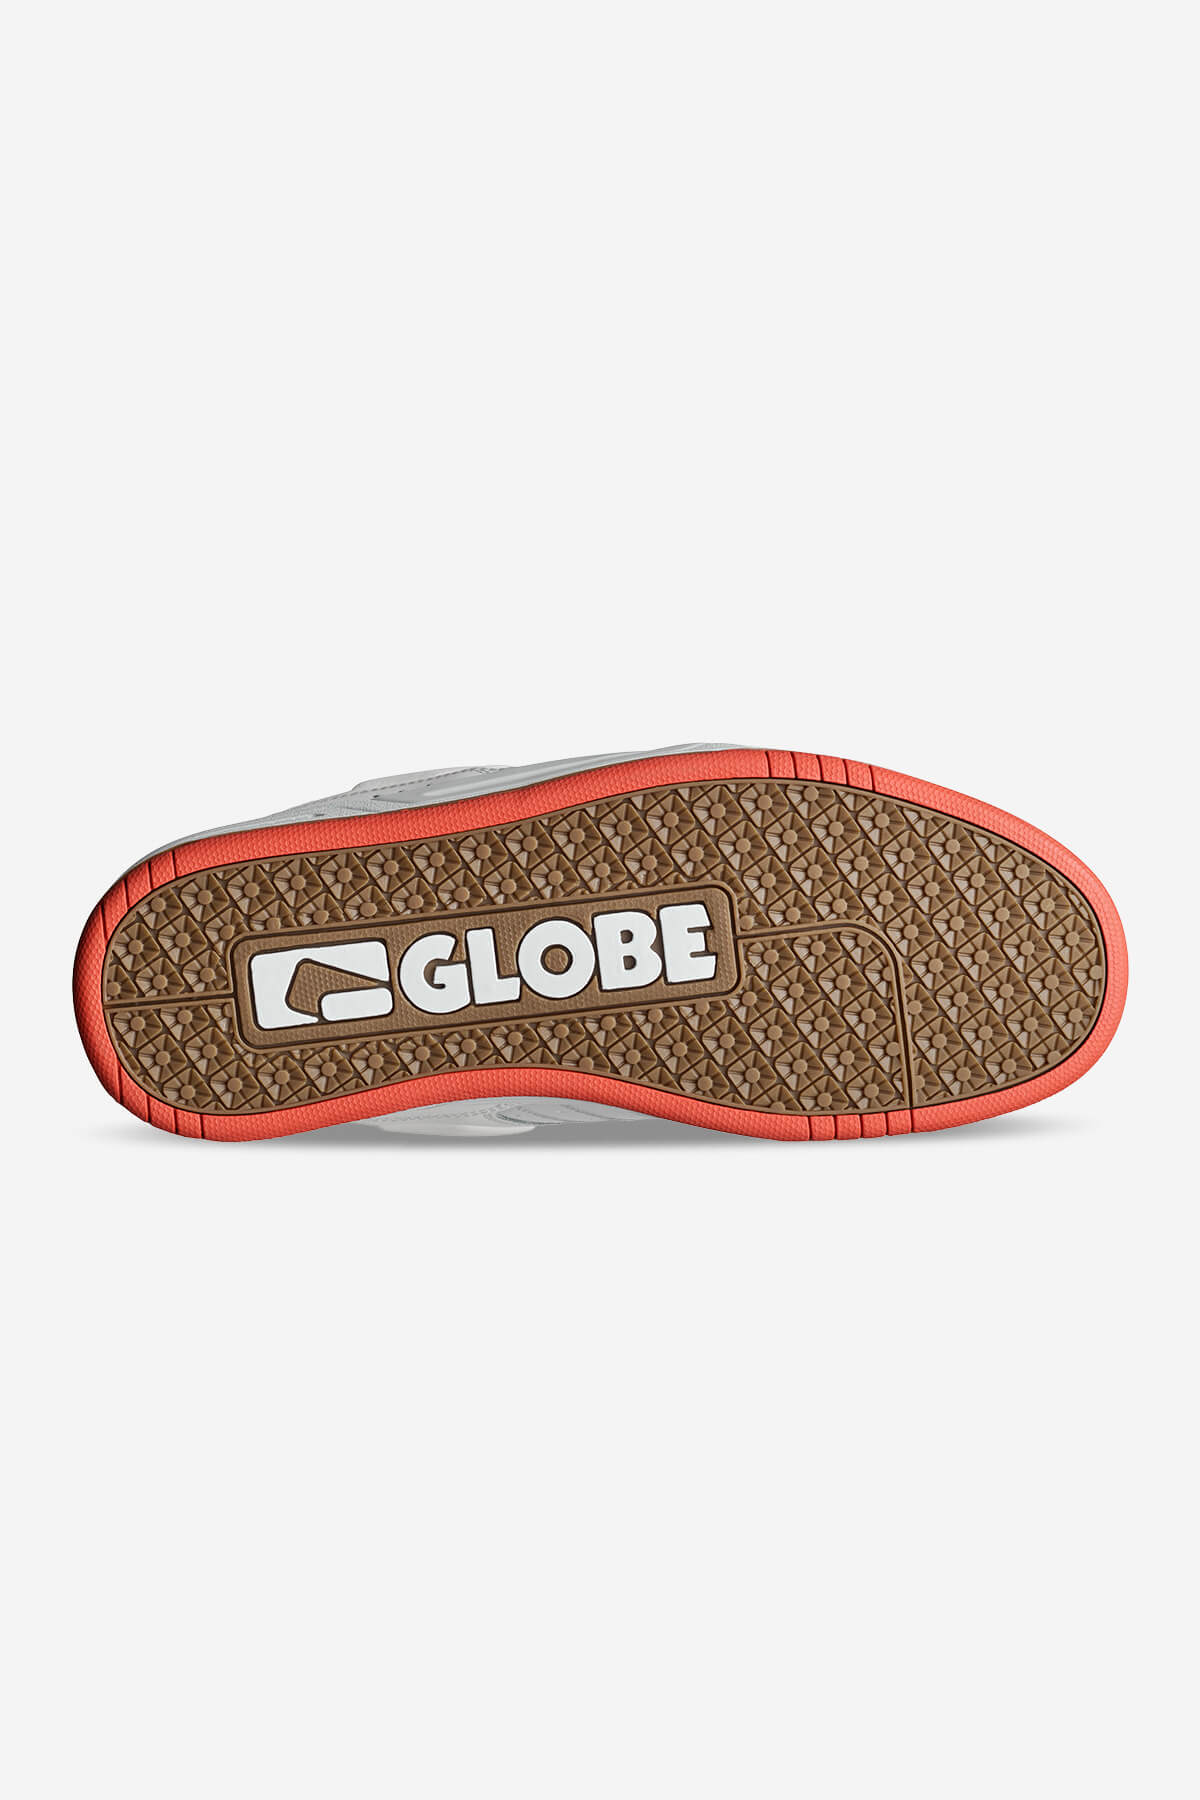 Globe - Fusion - White/Red - skateboard Sapatos